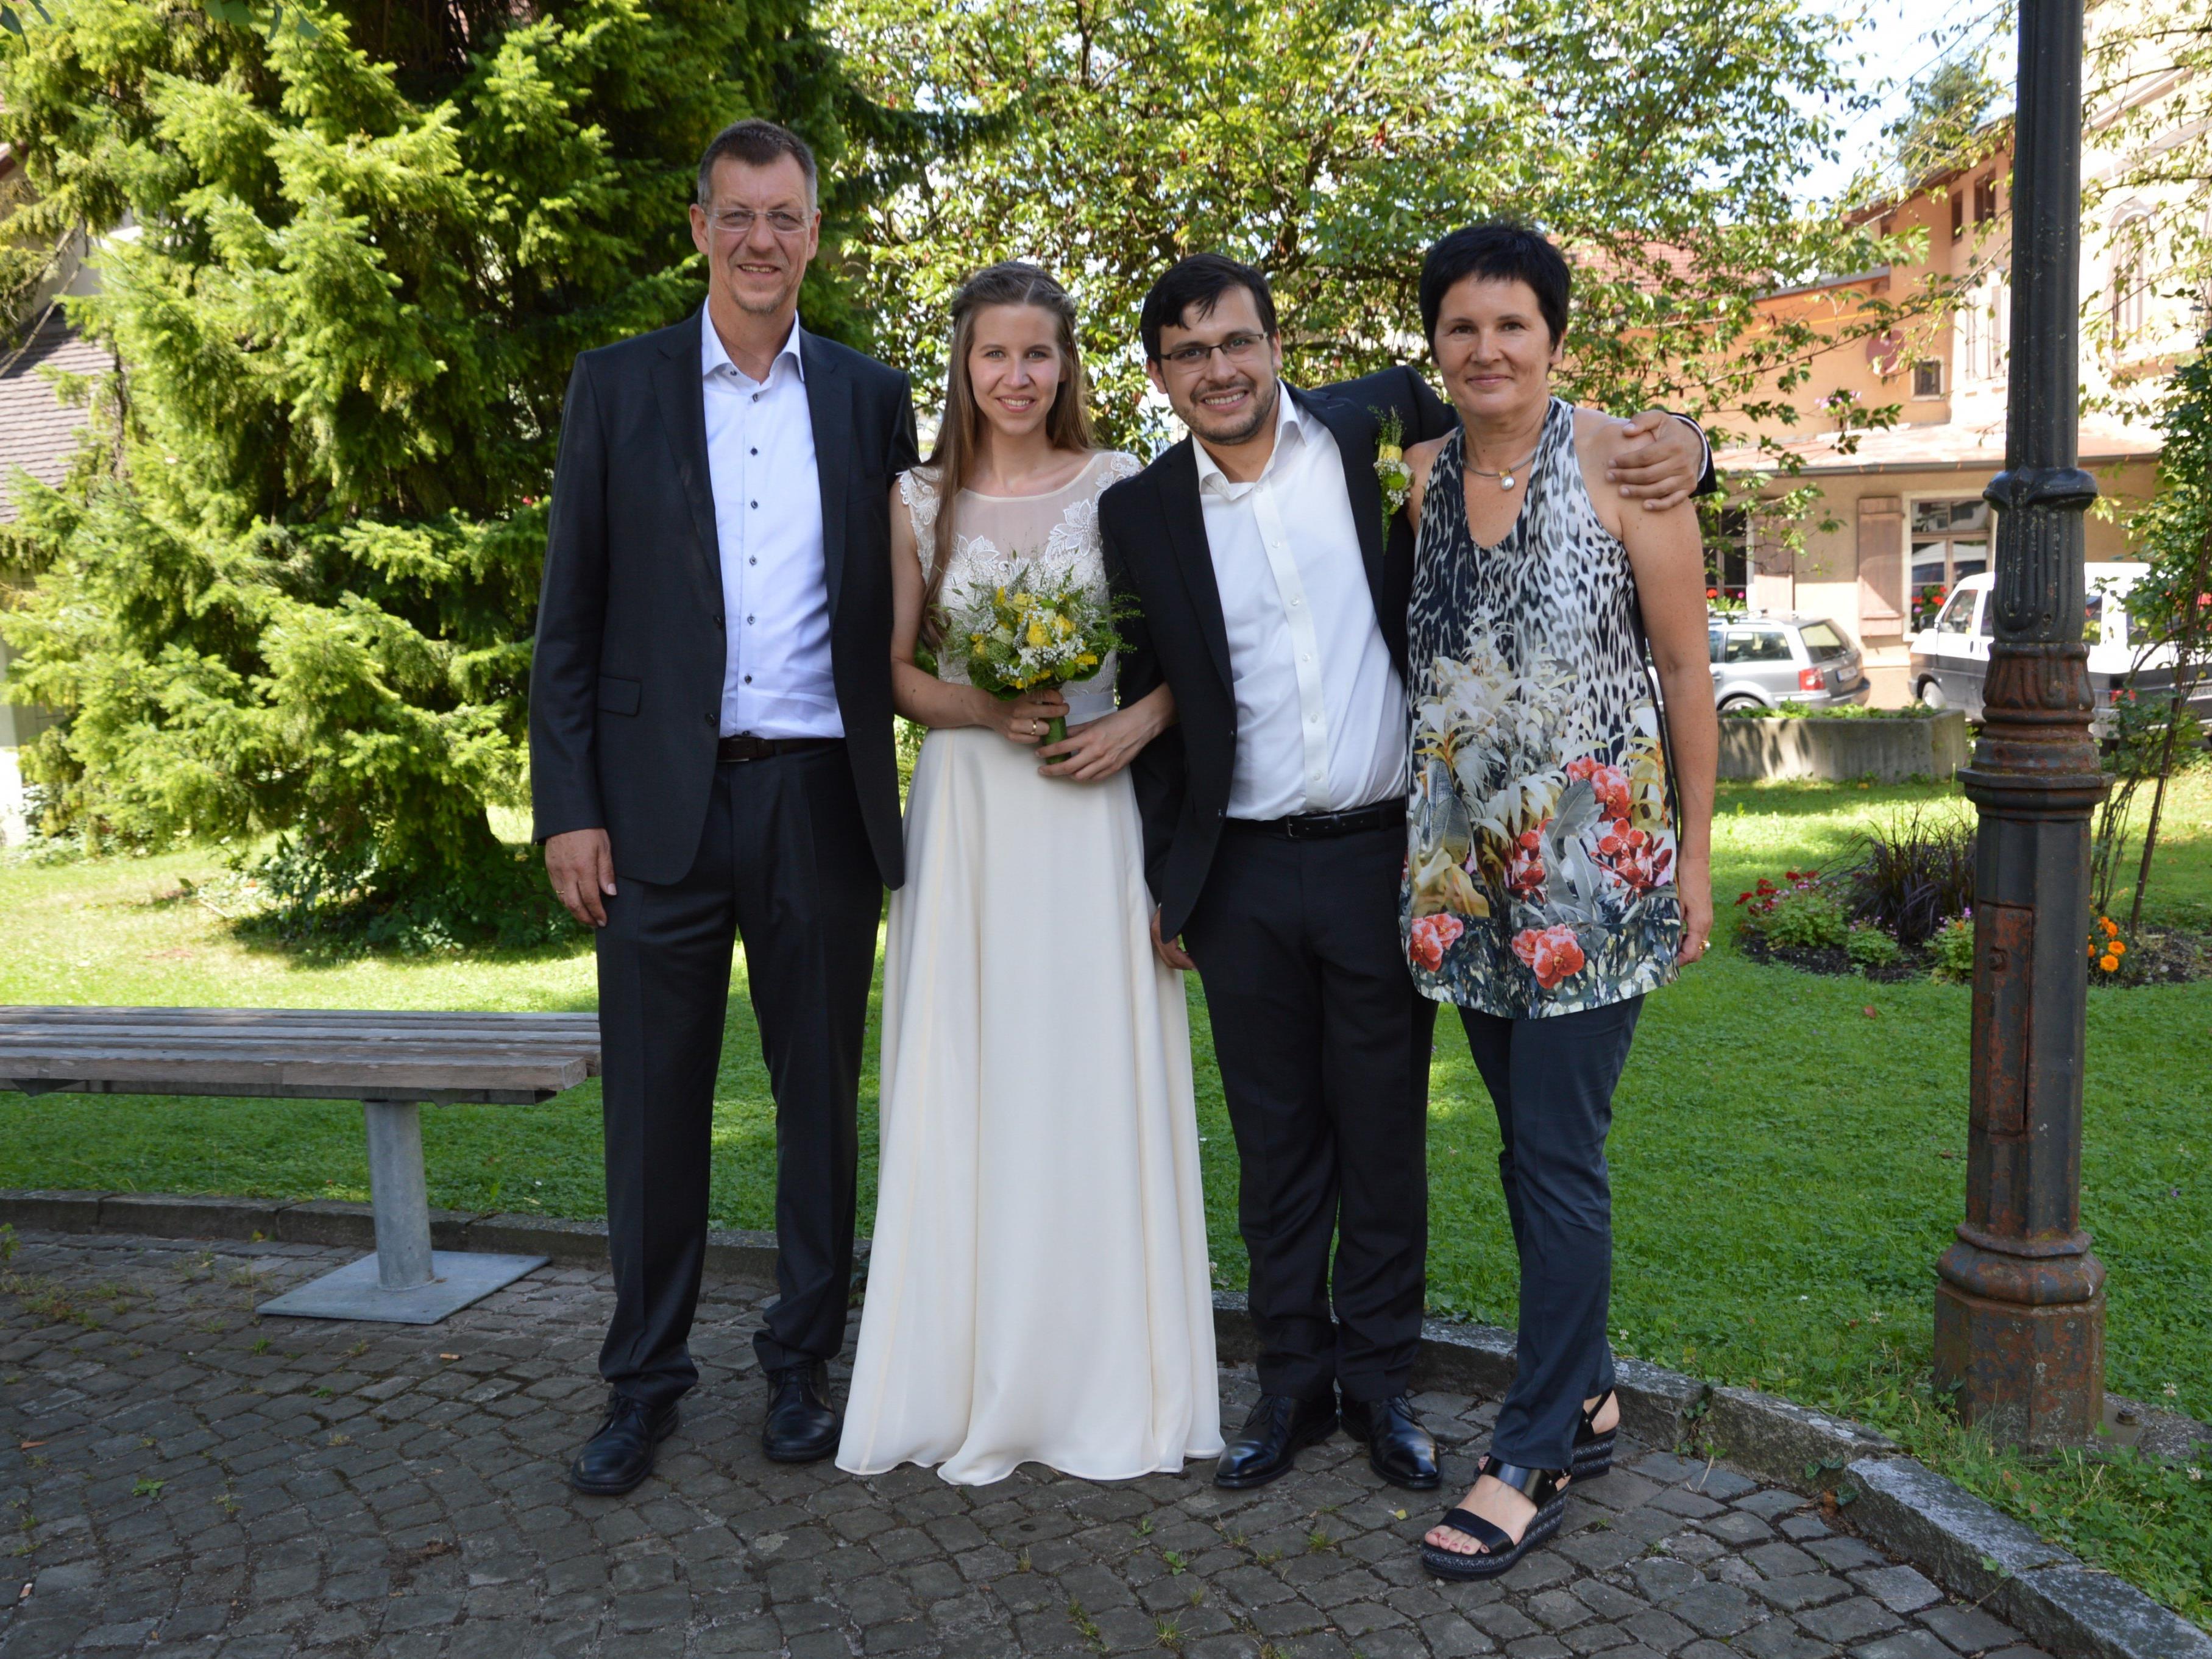 Mario Semiglia Lacava und Theresa Pöschl haben geheiratet